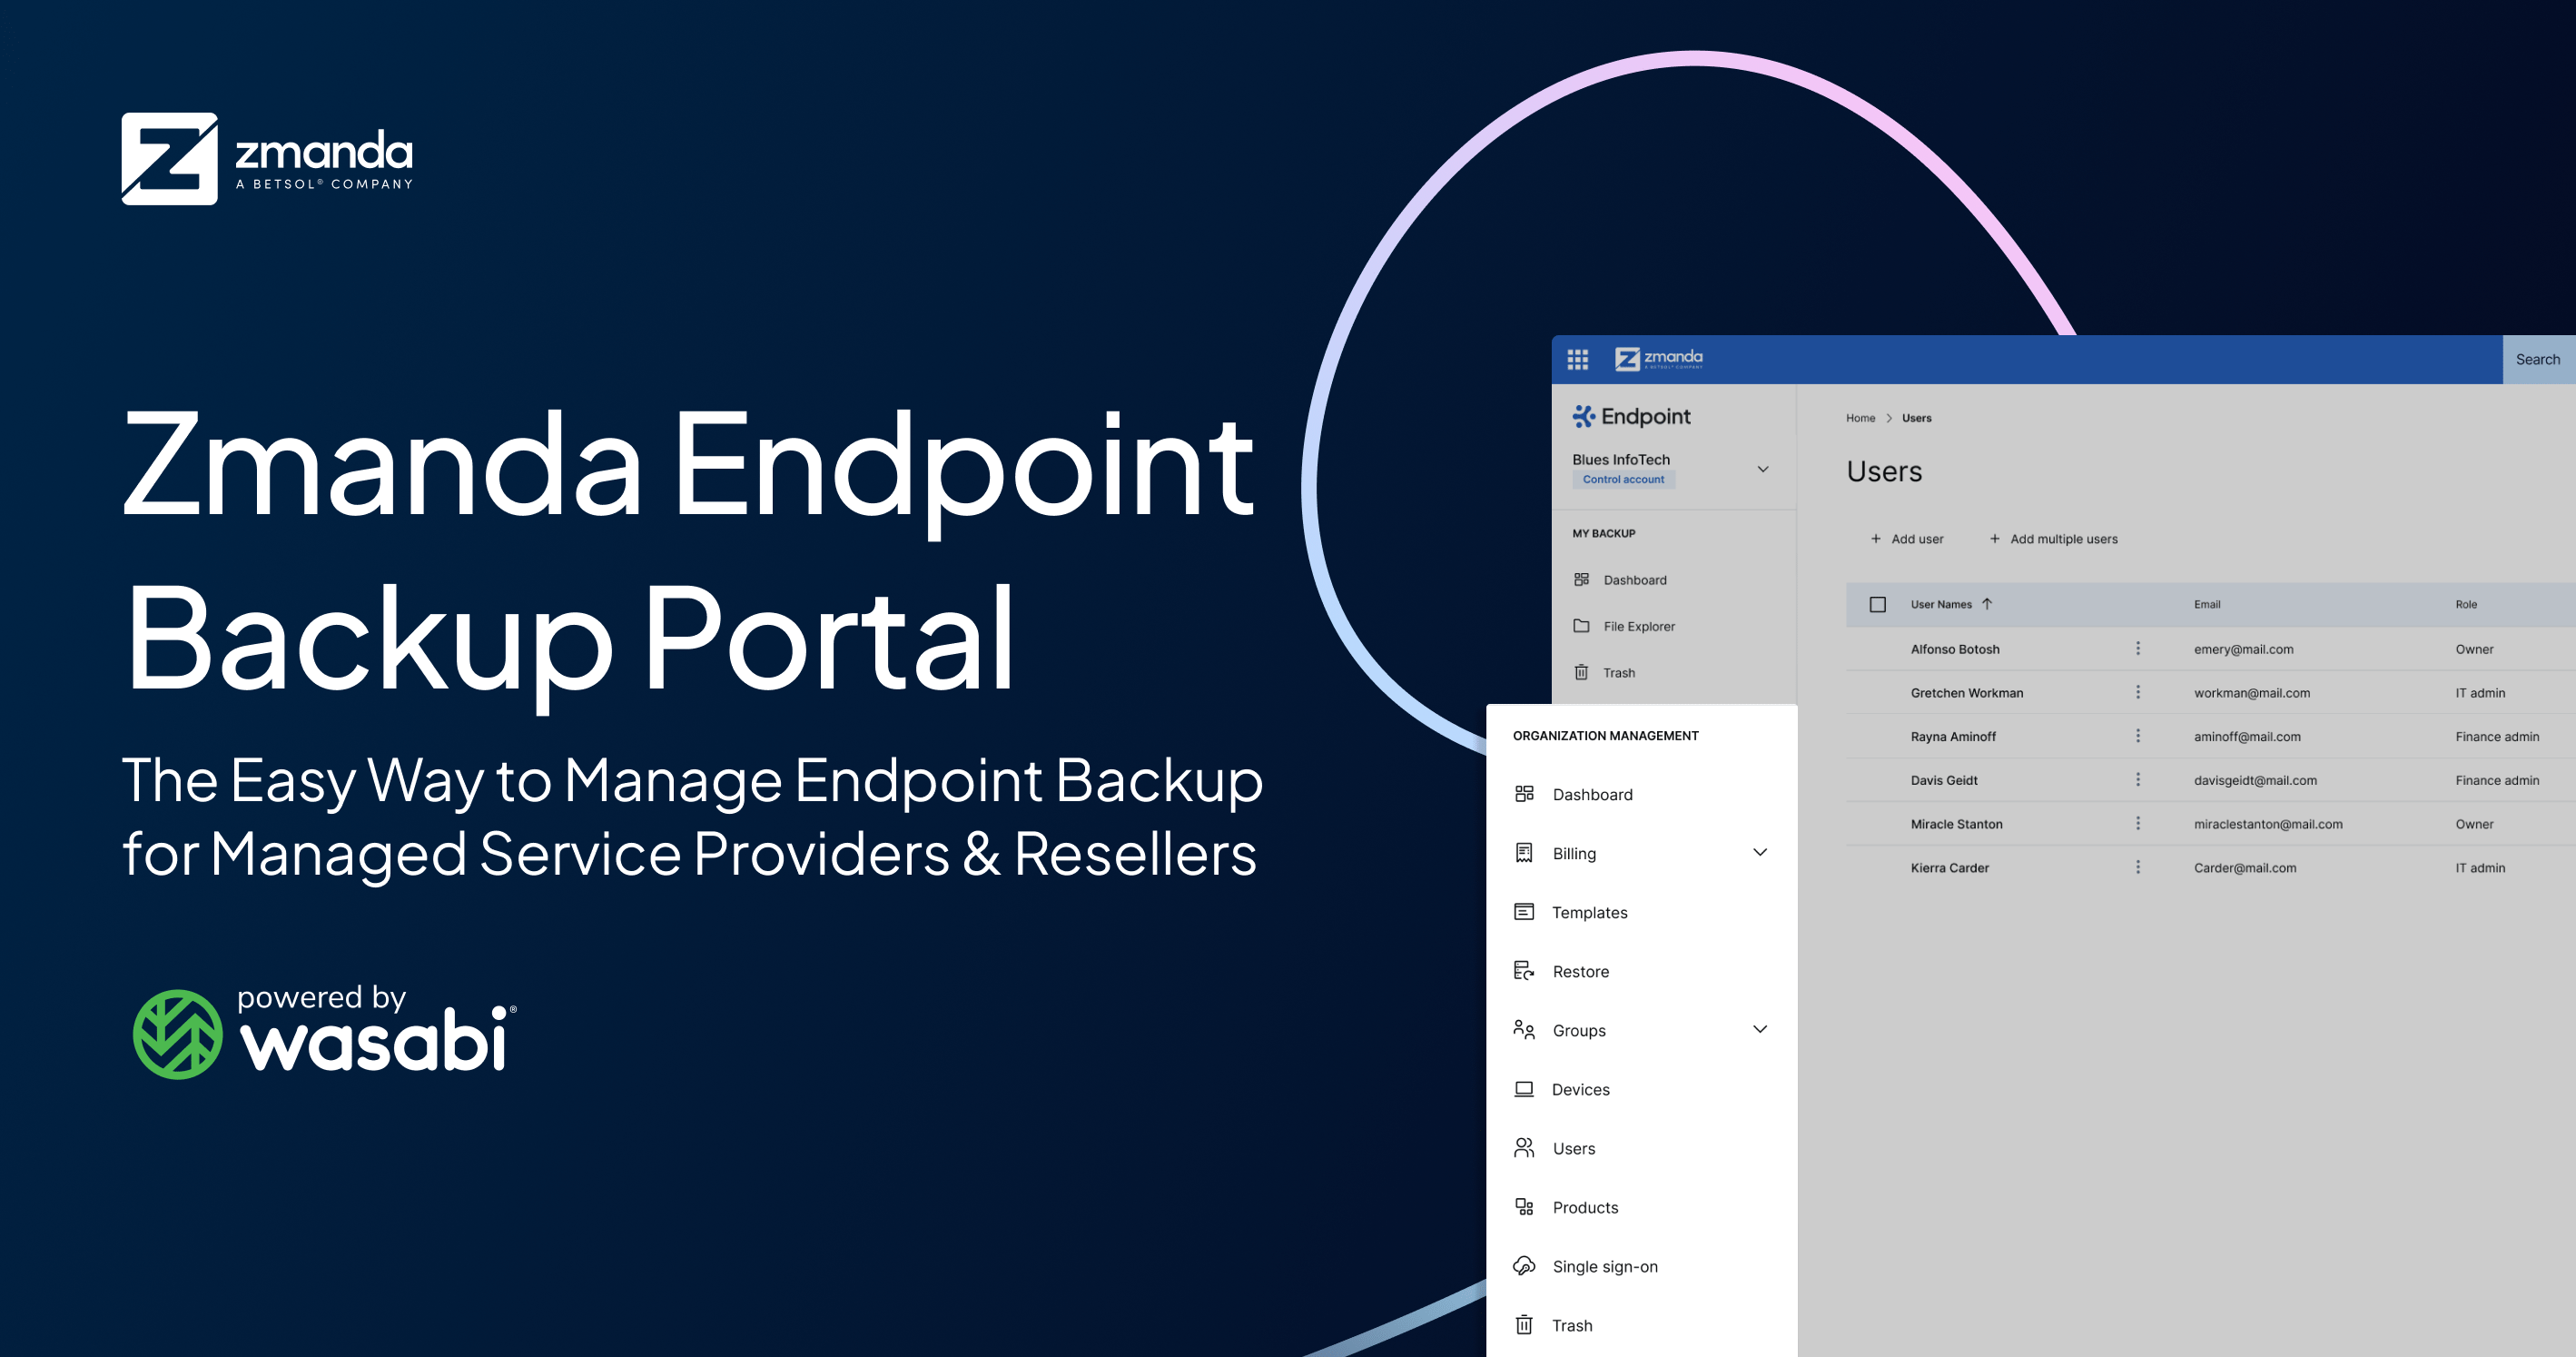 zmanda endpoint backup portal